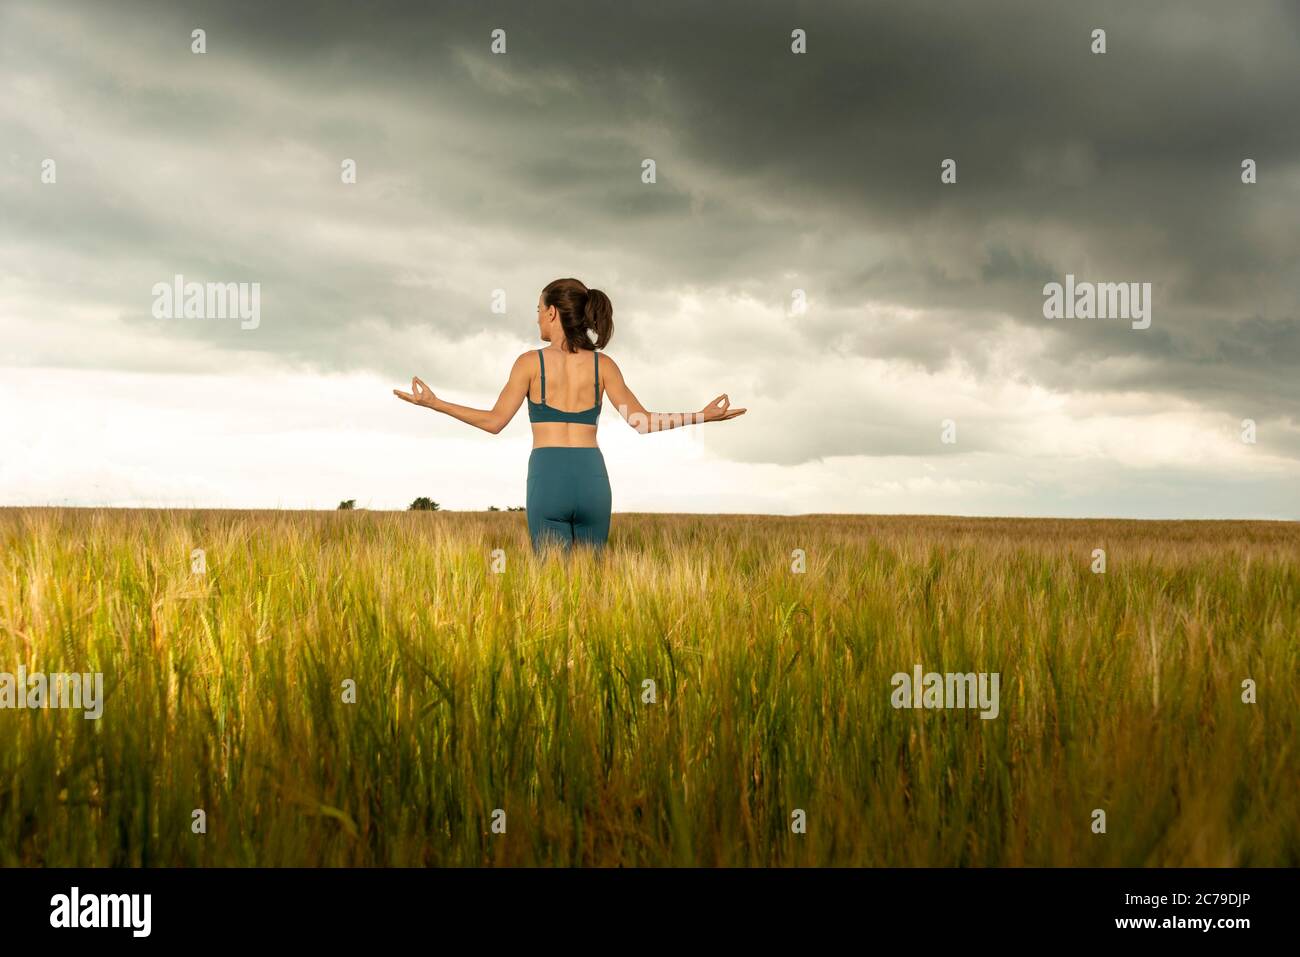 donna che si esercita e medita in un campo di grano con un cielo drammatico tempestoso, Foto Stock